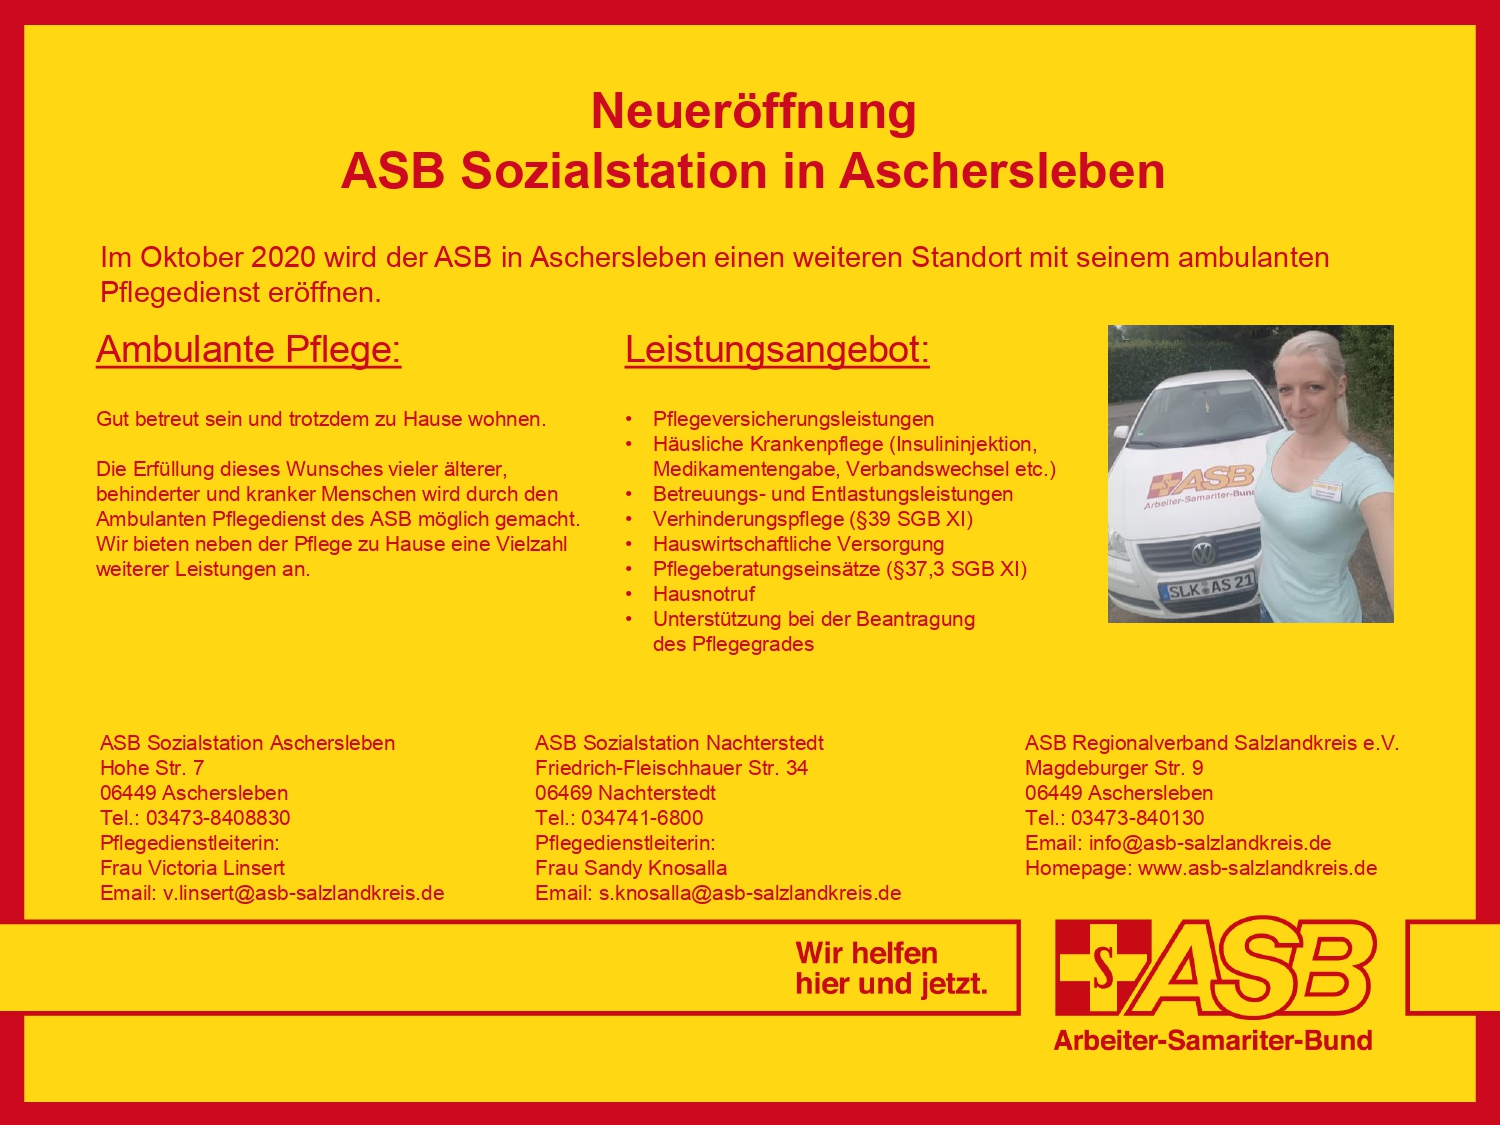 Aus dem Dornröschenschlaf erwacht! Alter Verwaltungssitz in Aschersleben wird zu moderner ASB-Sozialstation des Regionalverbandes Salzlandkreis.